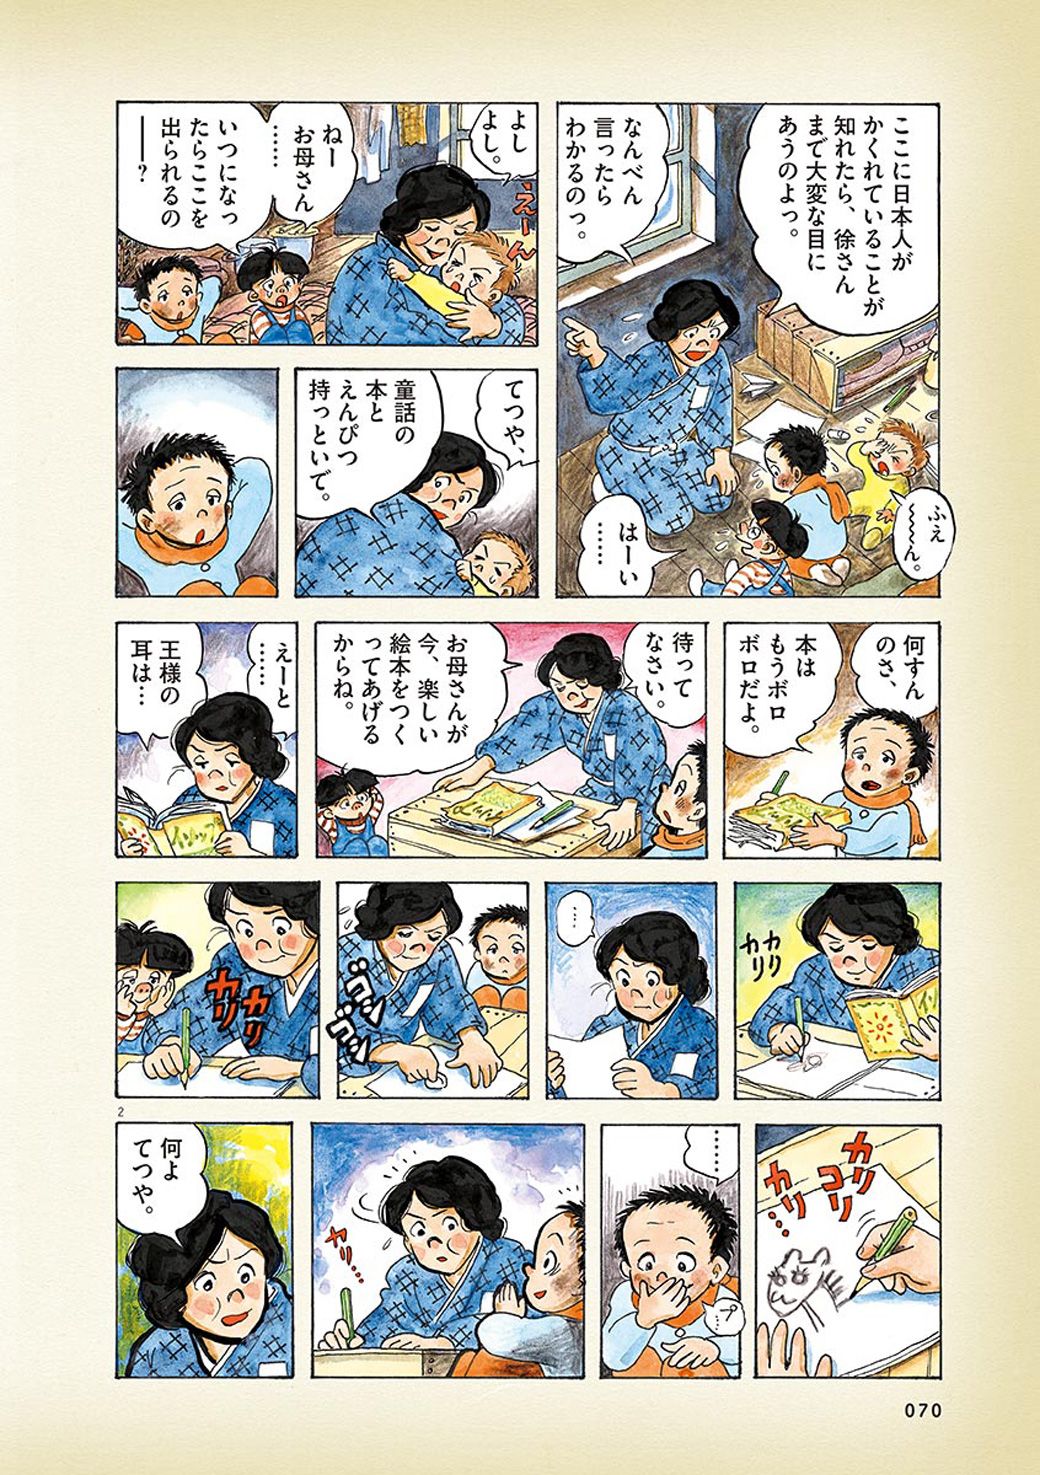 満州の 屋根裏暮らし で日本人が見つけた楽しみ 漫画 ひねもすのたり日記 第17回 東洋経済オンライン Goo ニュース